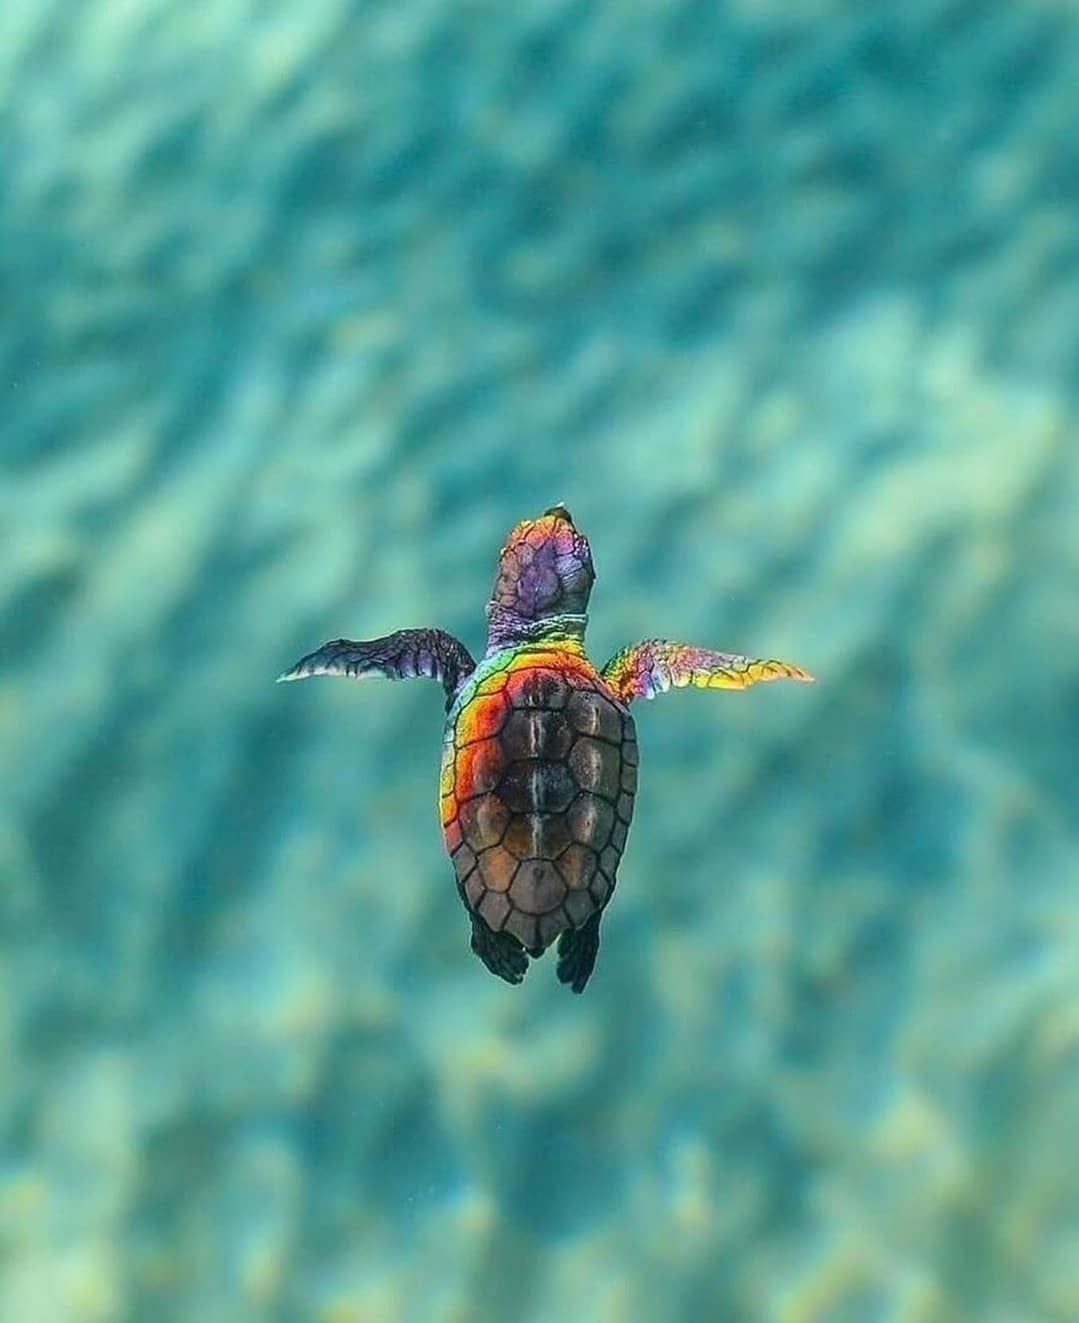 Cute Sea Turtle Wallpapers